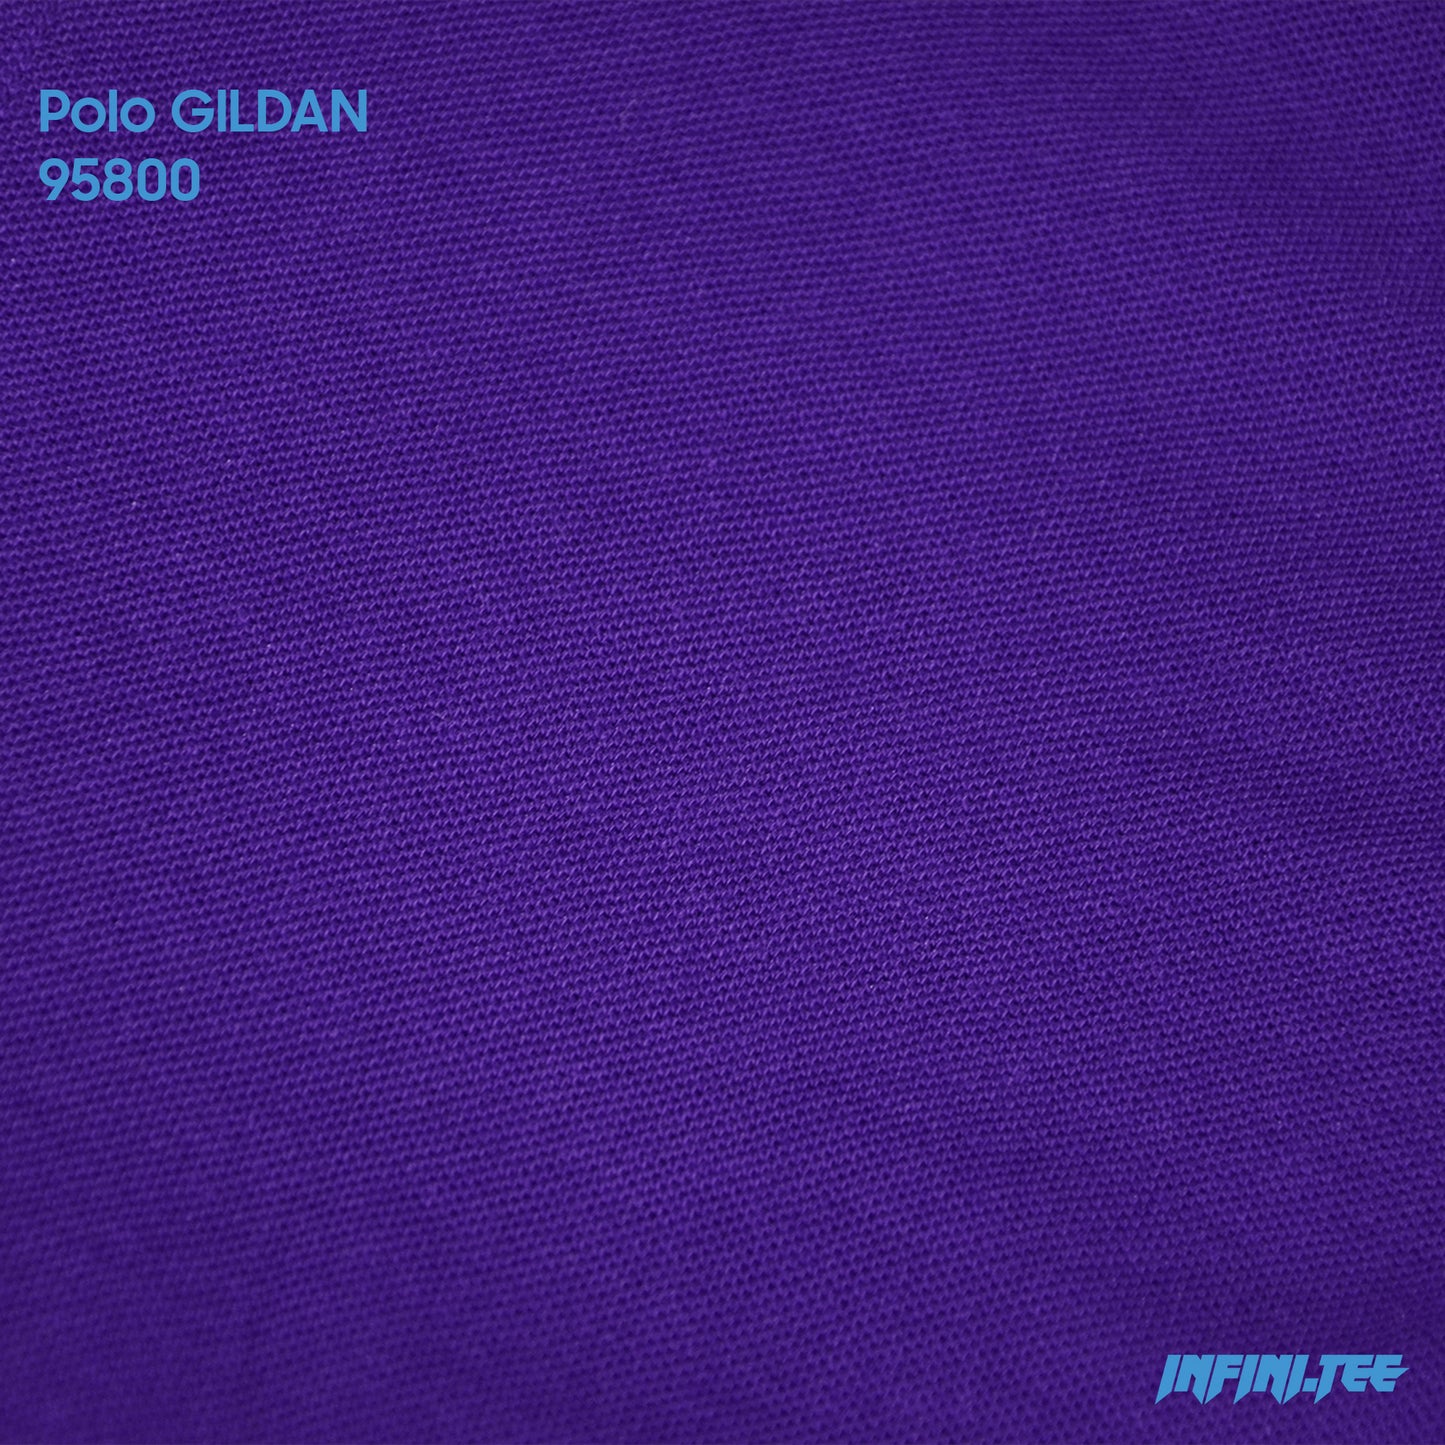 POLO 95800 GILDAN - PURPLE